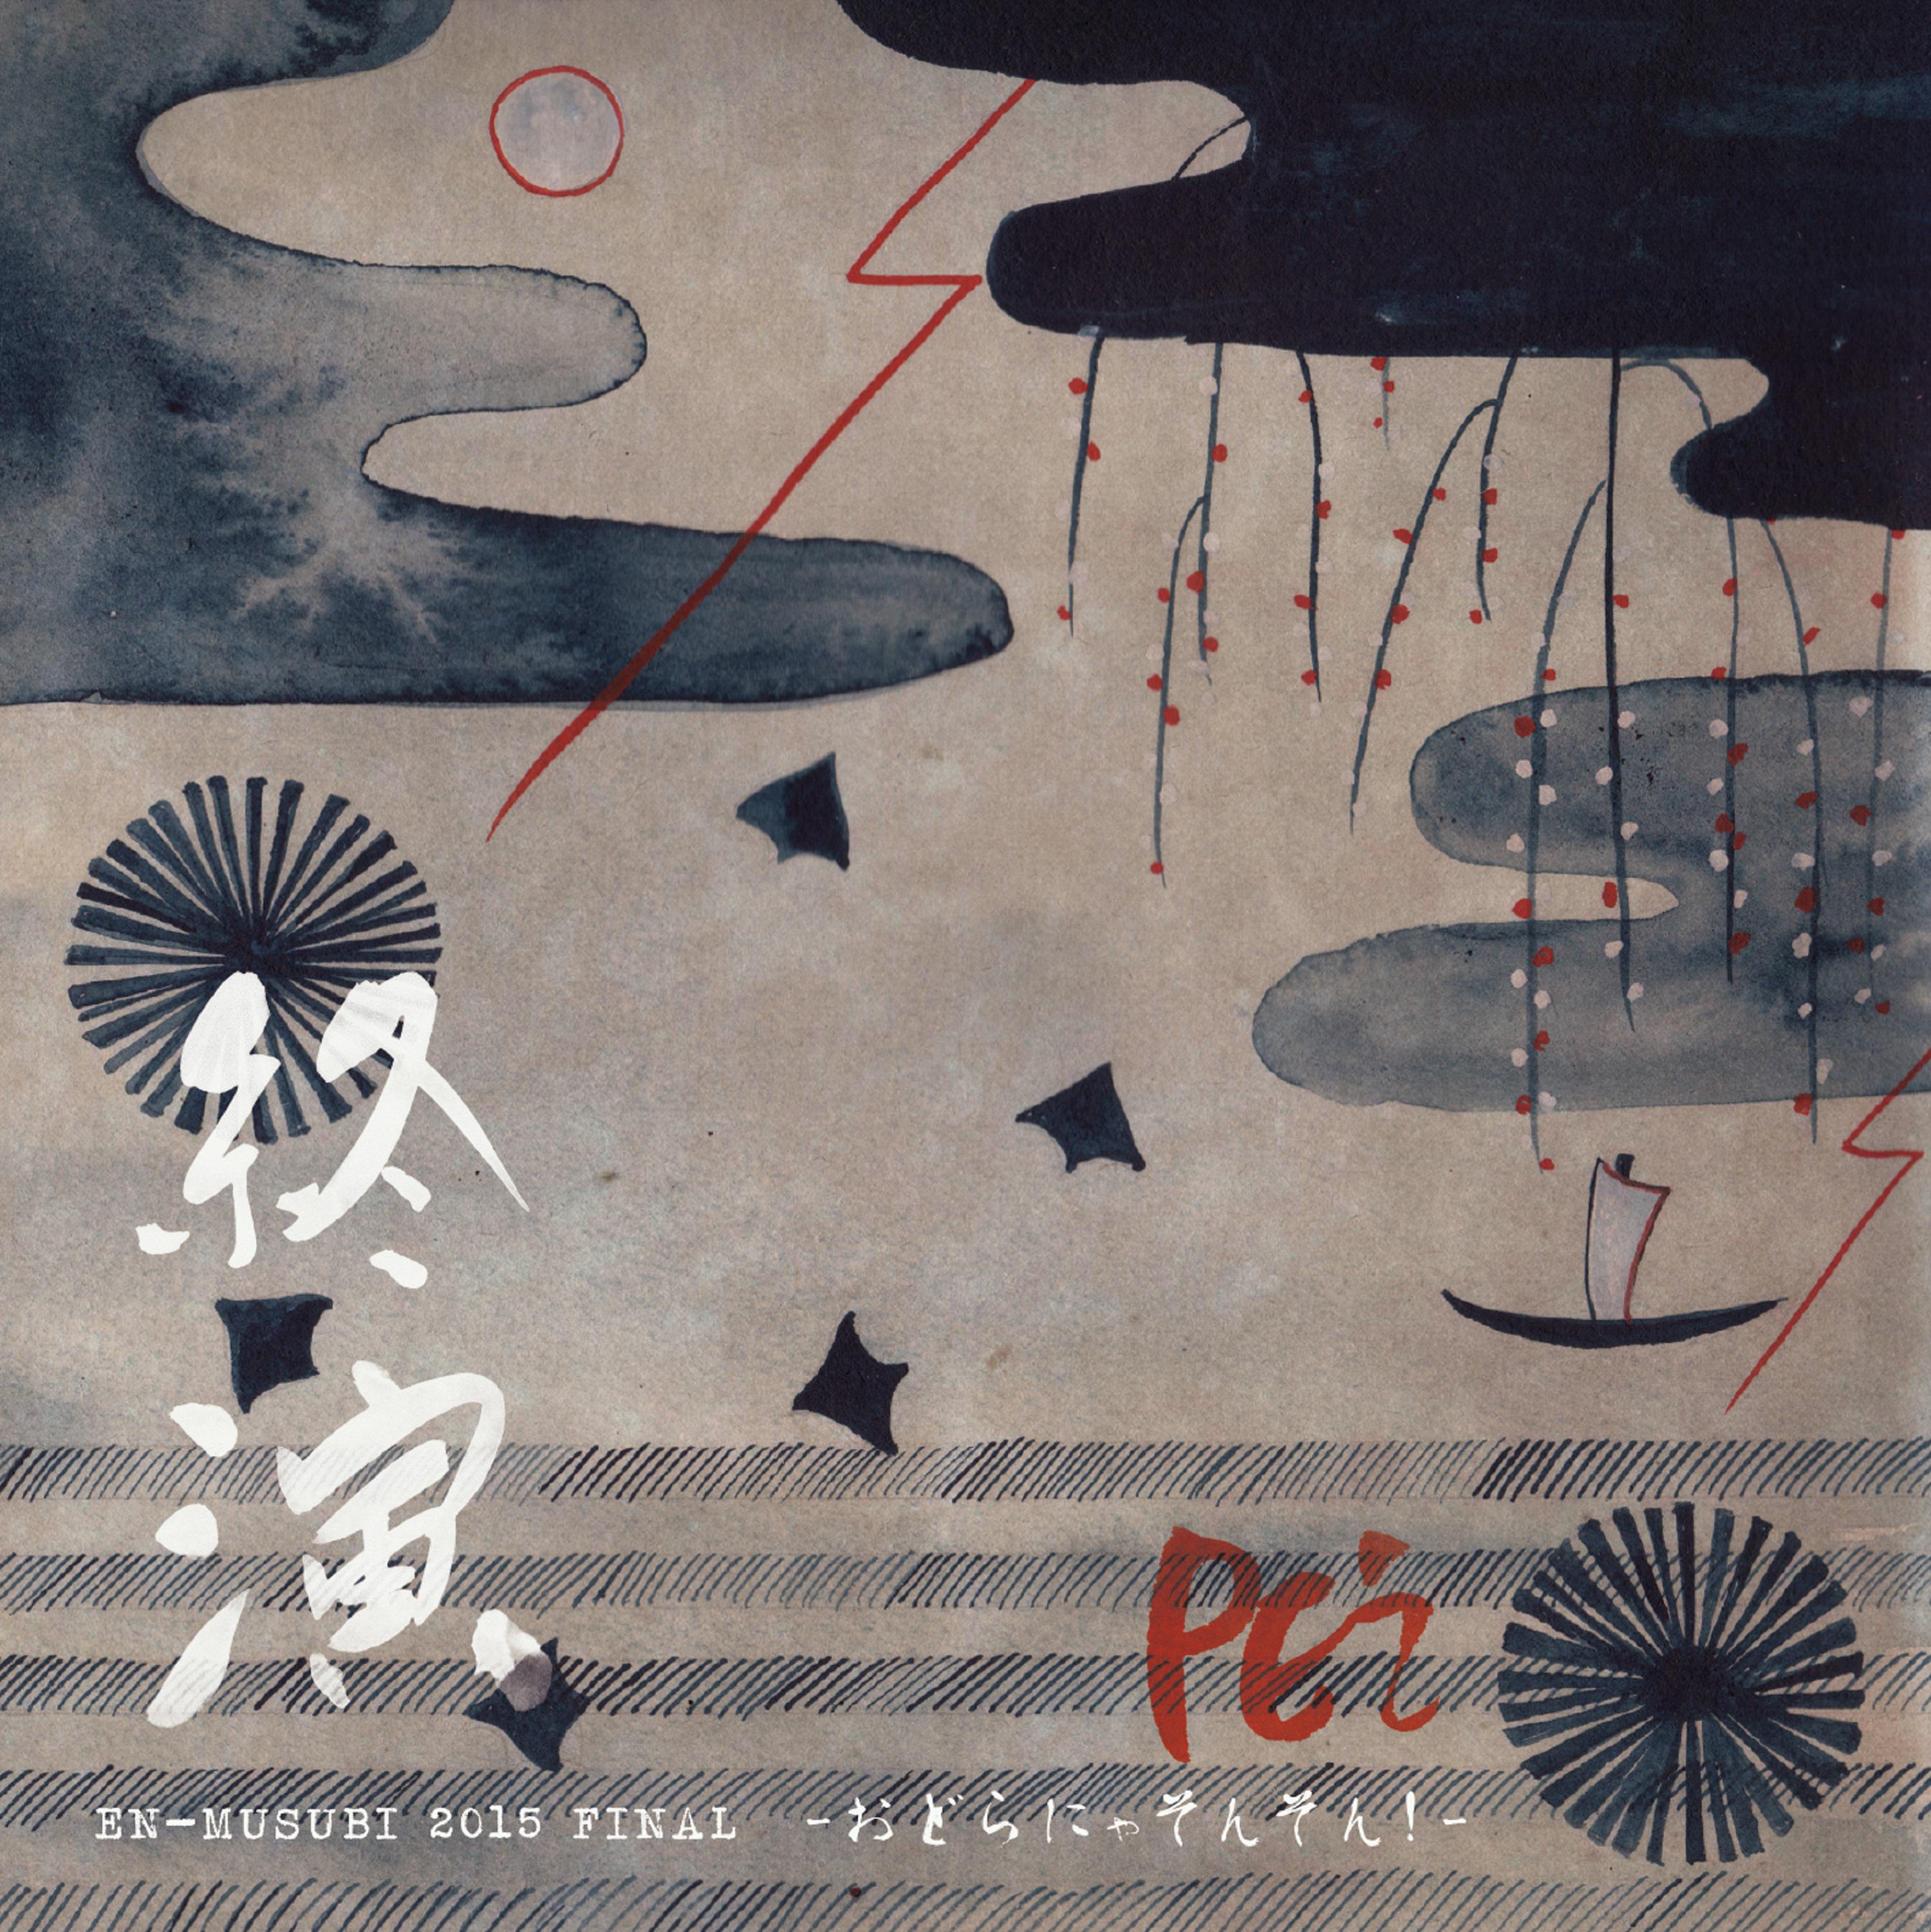 PE’Z - THE LEGEND (PE’Z 終演 EN-MUSUBI 2015 FINAL〜おどらにゃそんそん！〜)